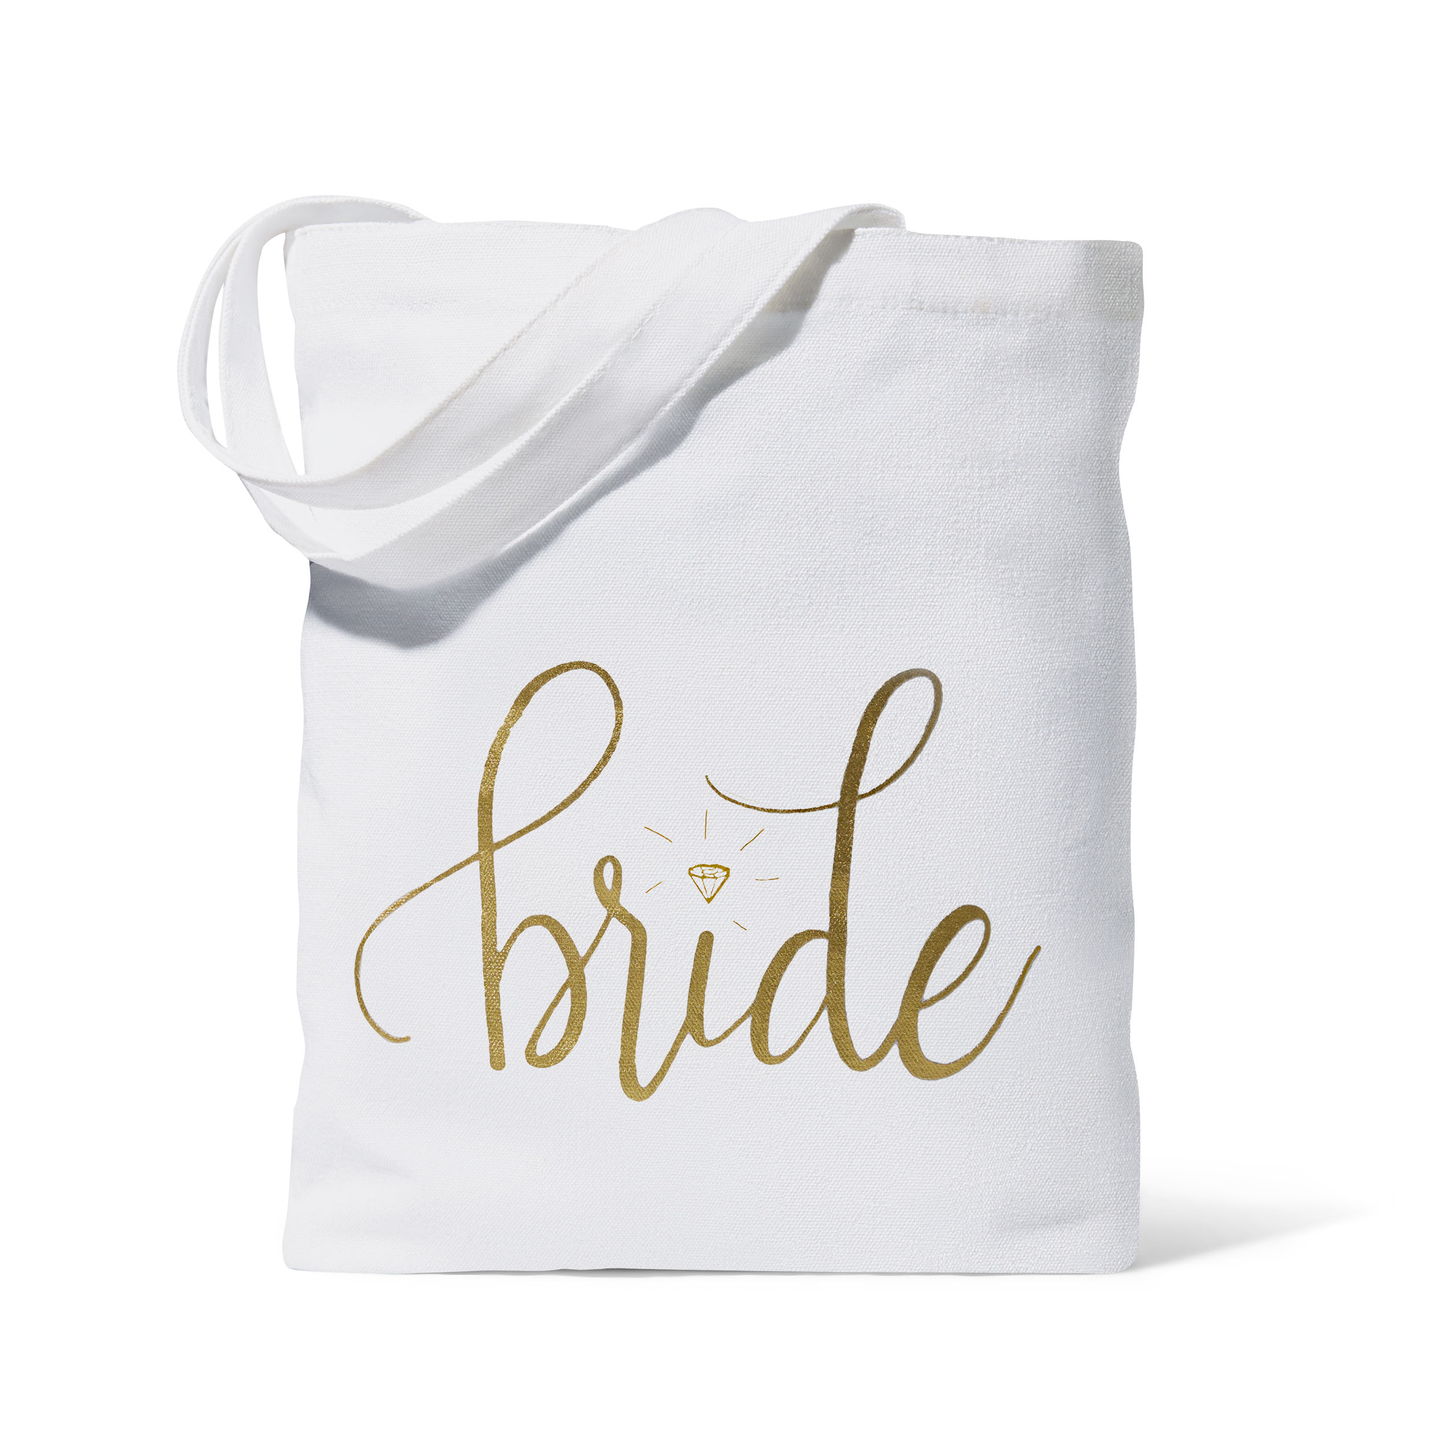 Bride Canvas Beach Tote Bag: Cream Color